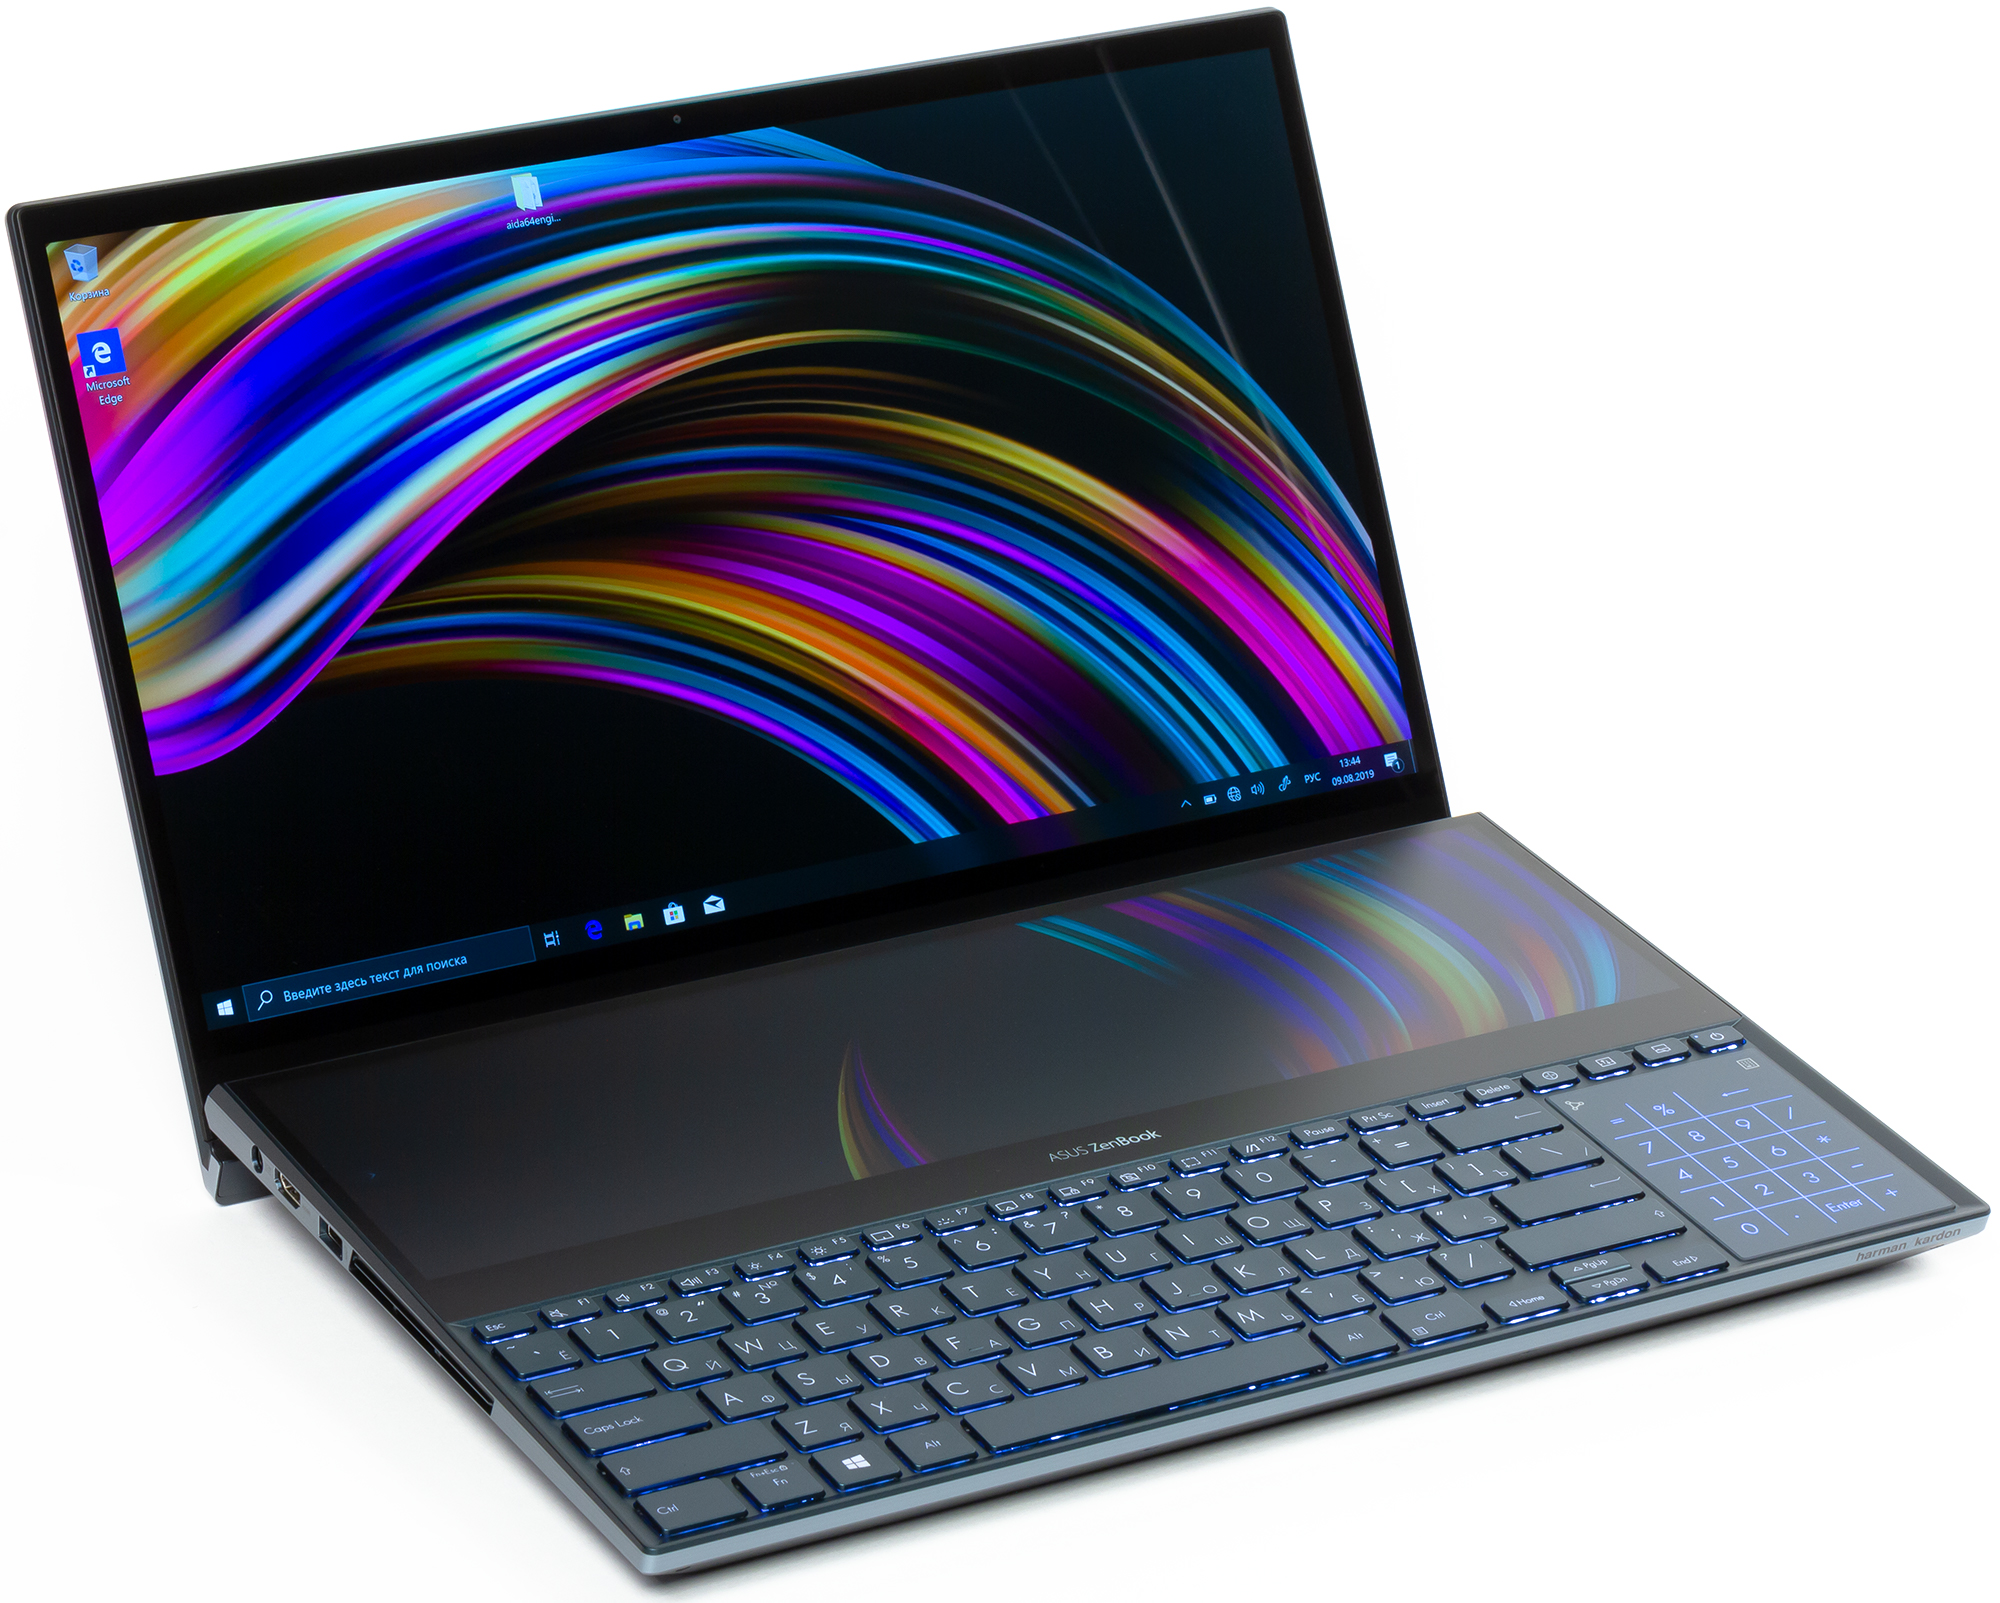 Ноутбуки Asus Zenbook Pro Купить